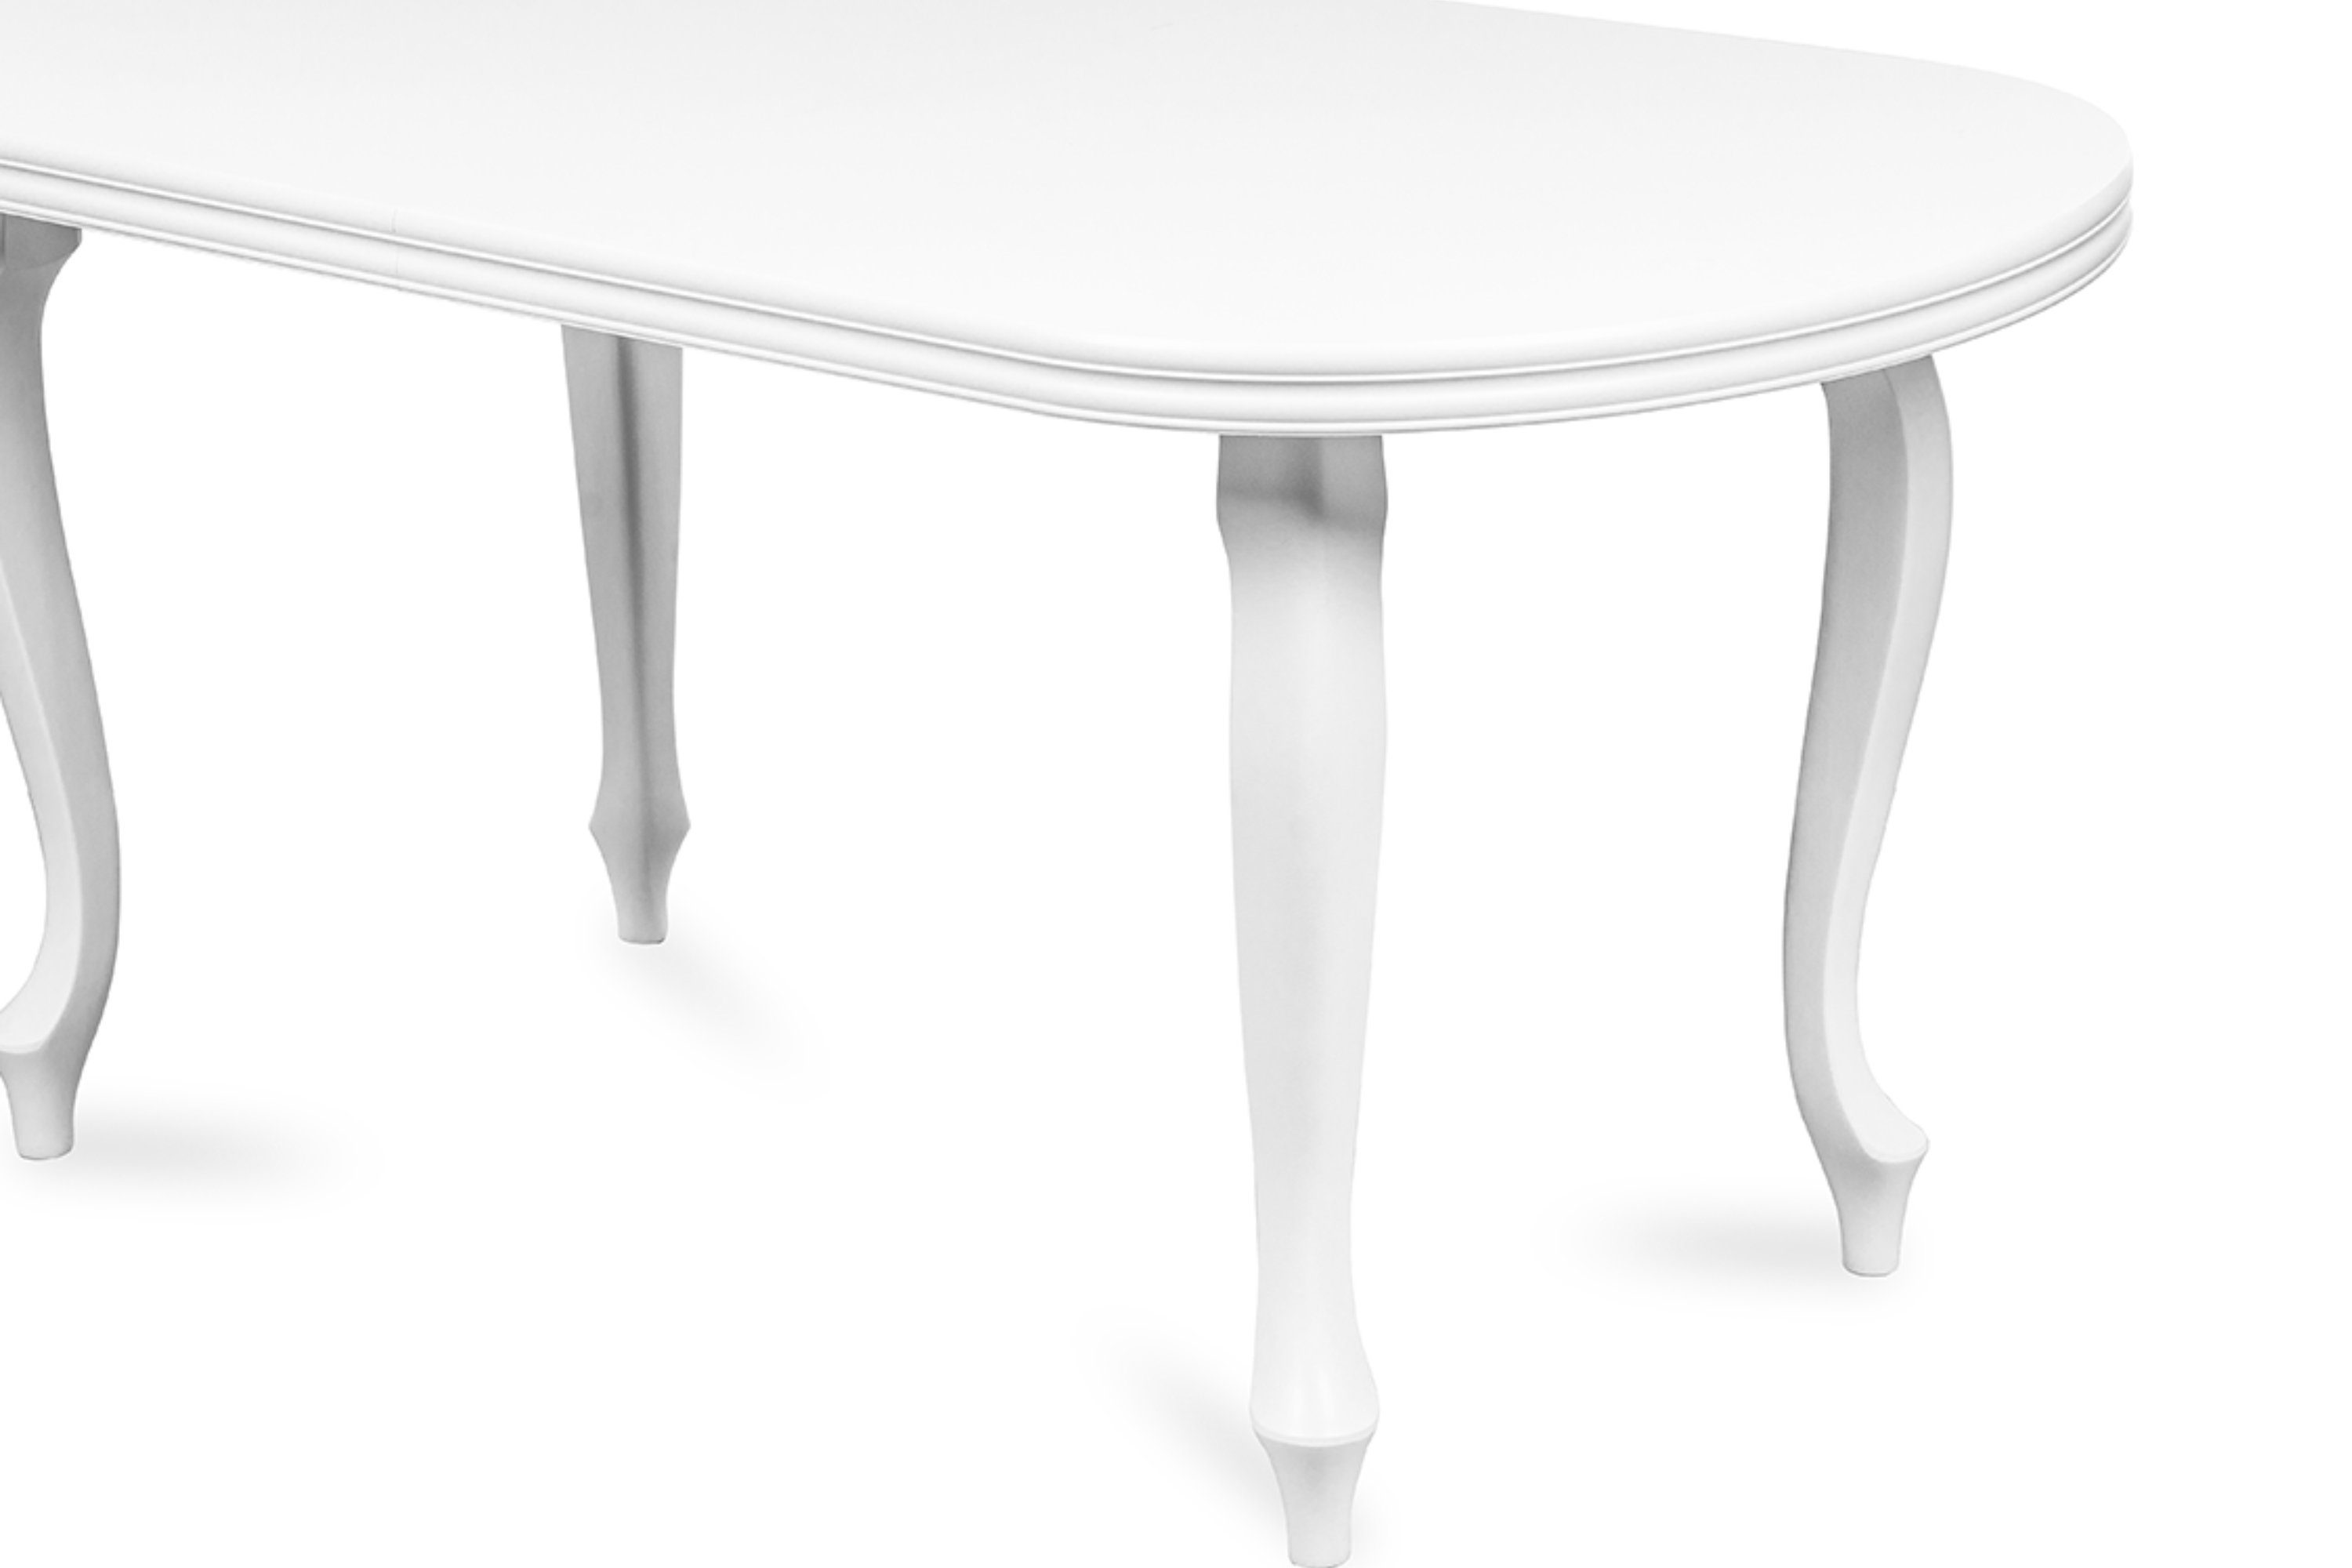 Konsimo Esstisch ALTIS Esszimmertisch oval ausziehbar weiß bis 240cm, | Küchentisch | weiß 160x90cm, weiß